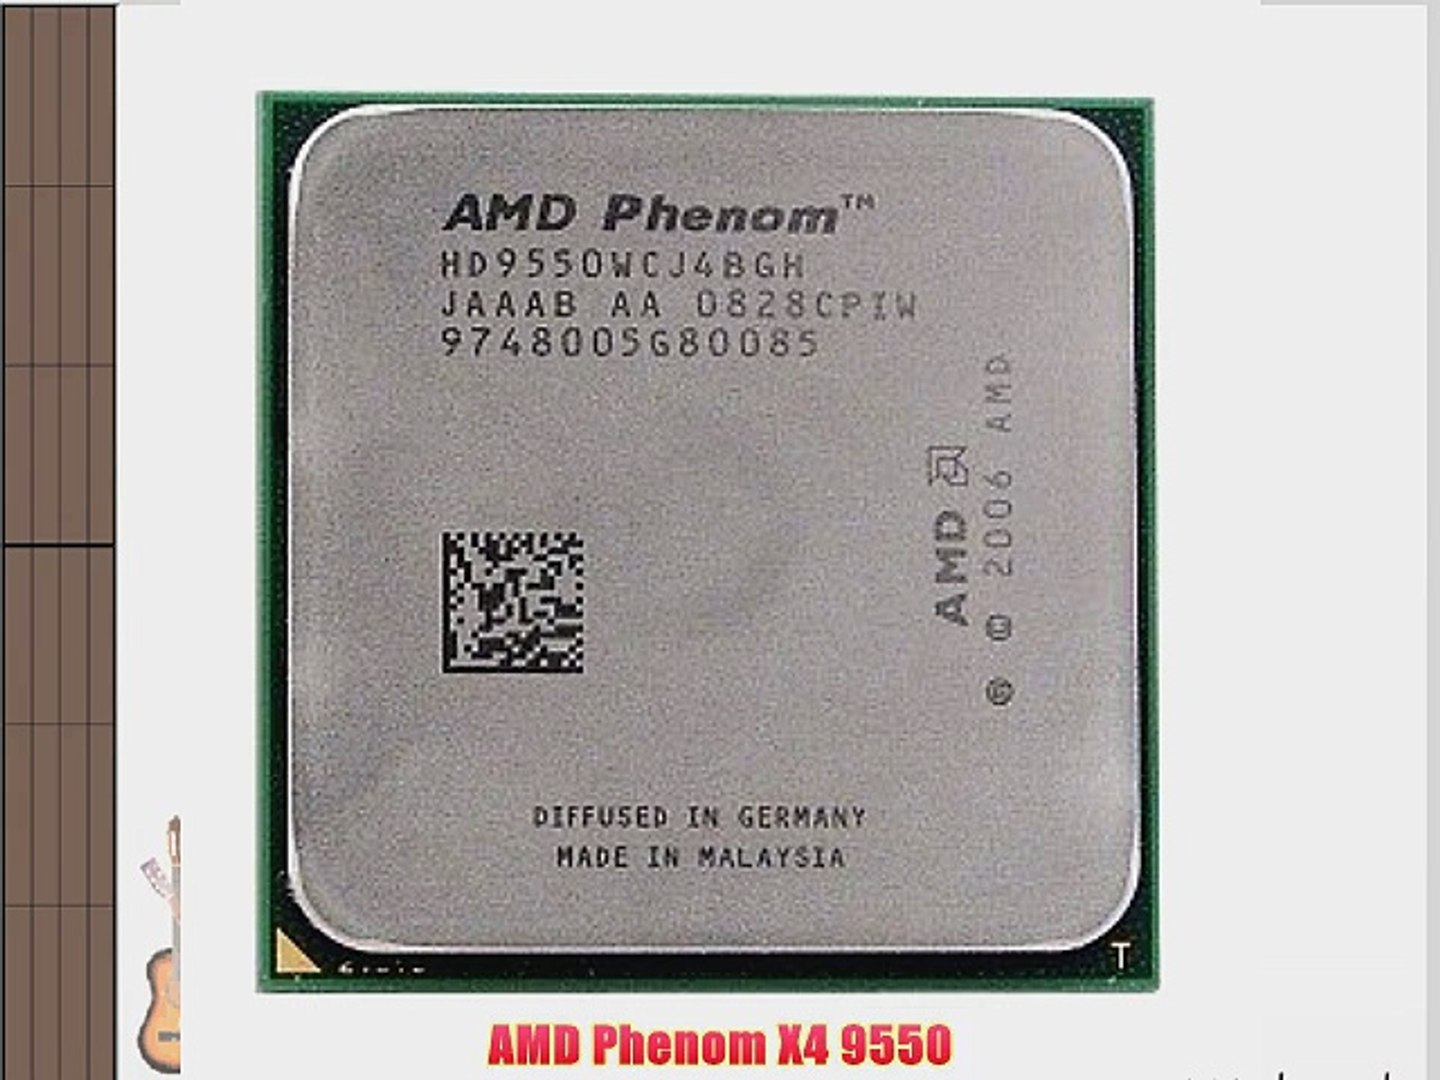 AMD Phenom II X4 955 Black Edition 3.2GHz 4x512KB L2/6MB L3 Socket AM3 125W Quad-Core CPU